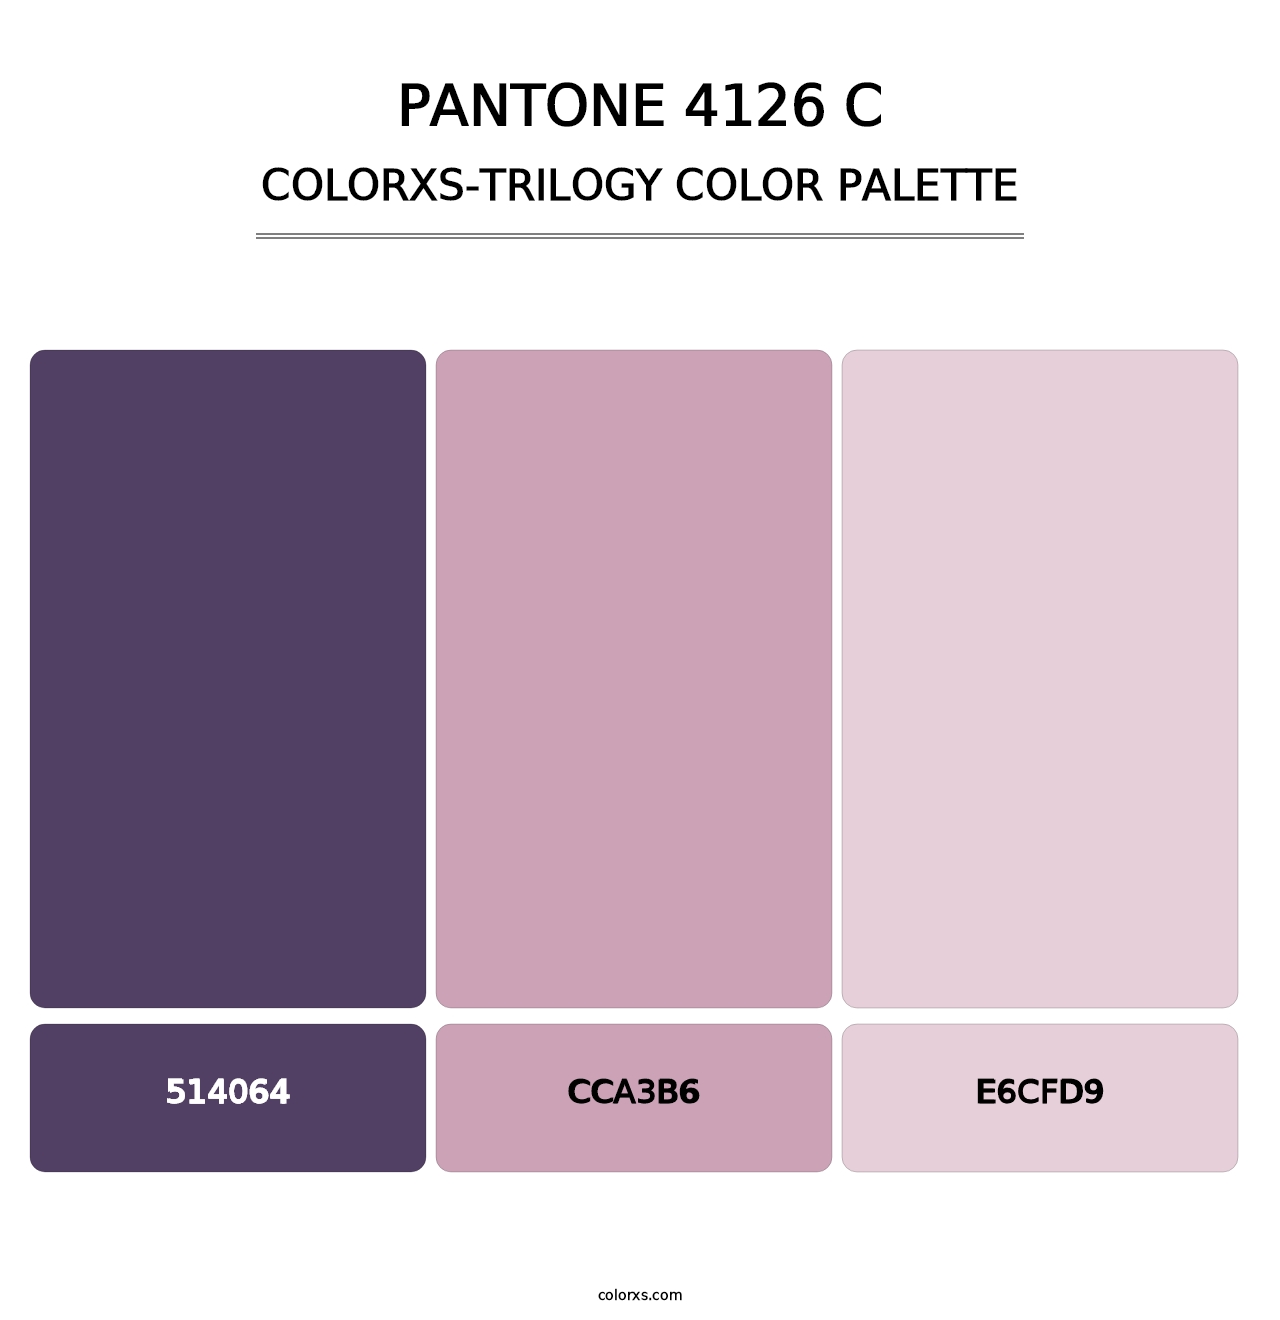 PANTONE 4126 C - Colorxs Trilogy Palette